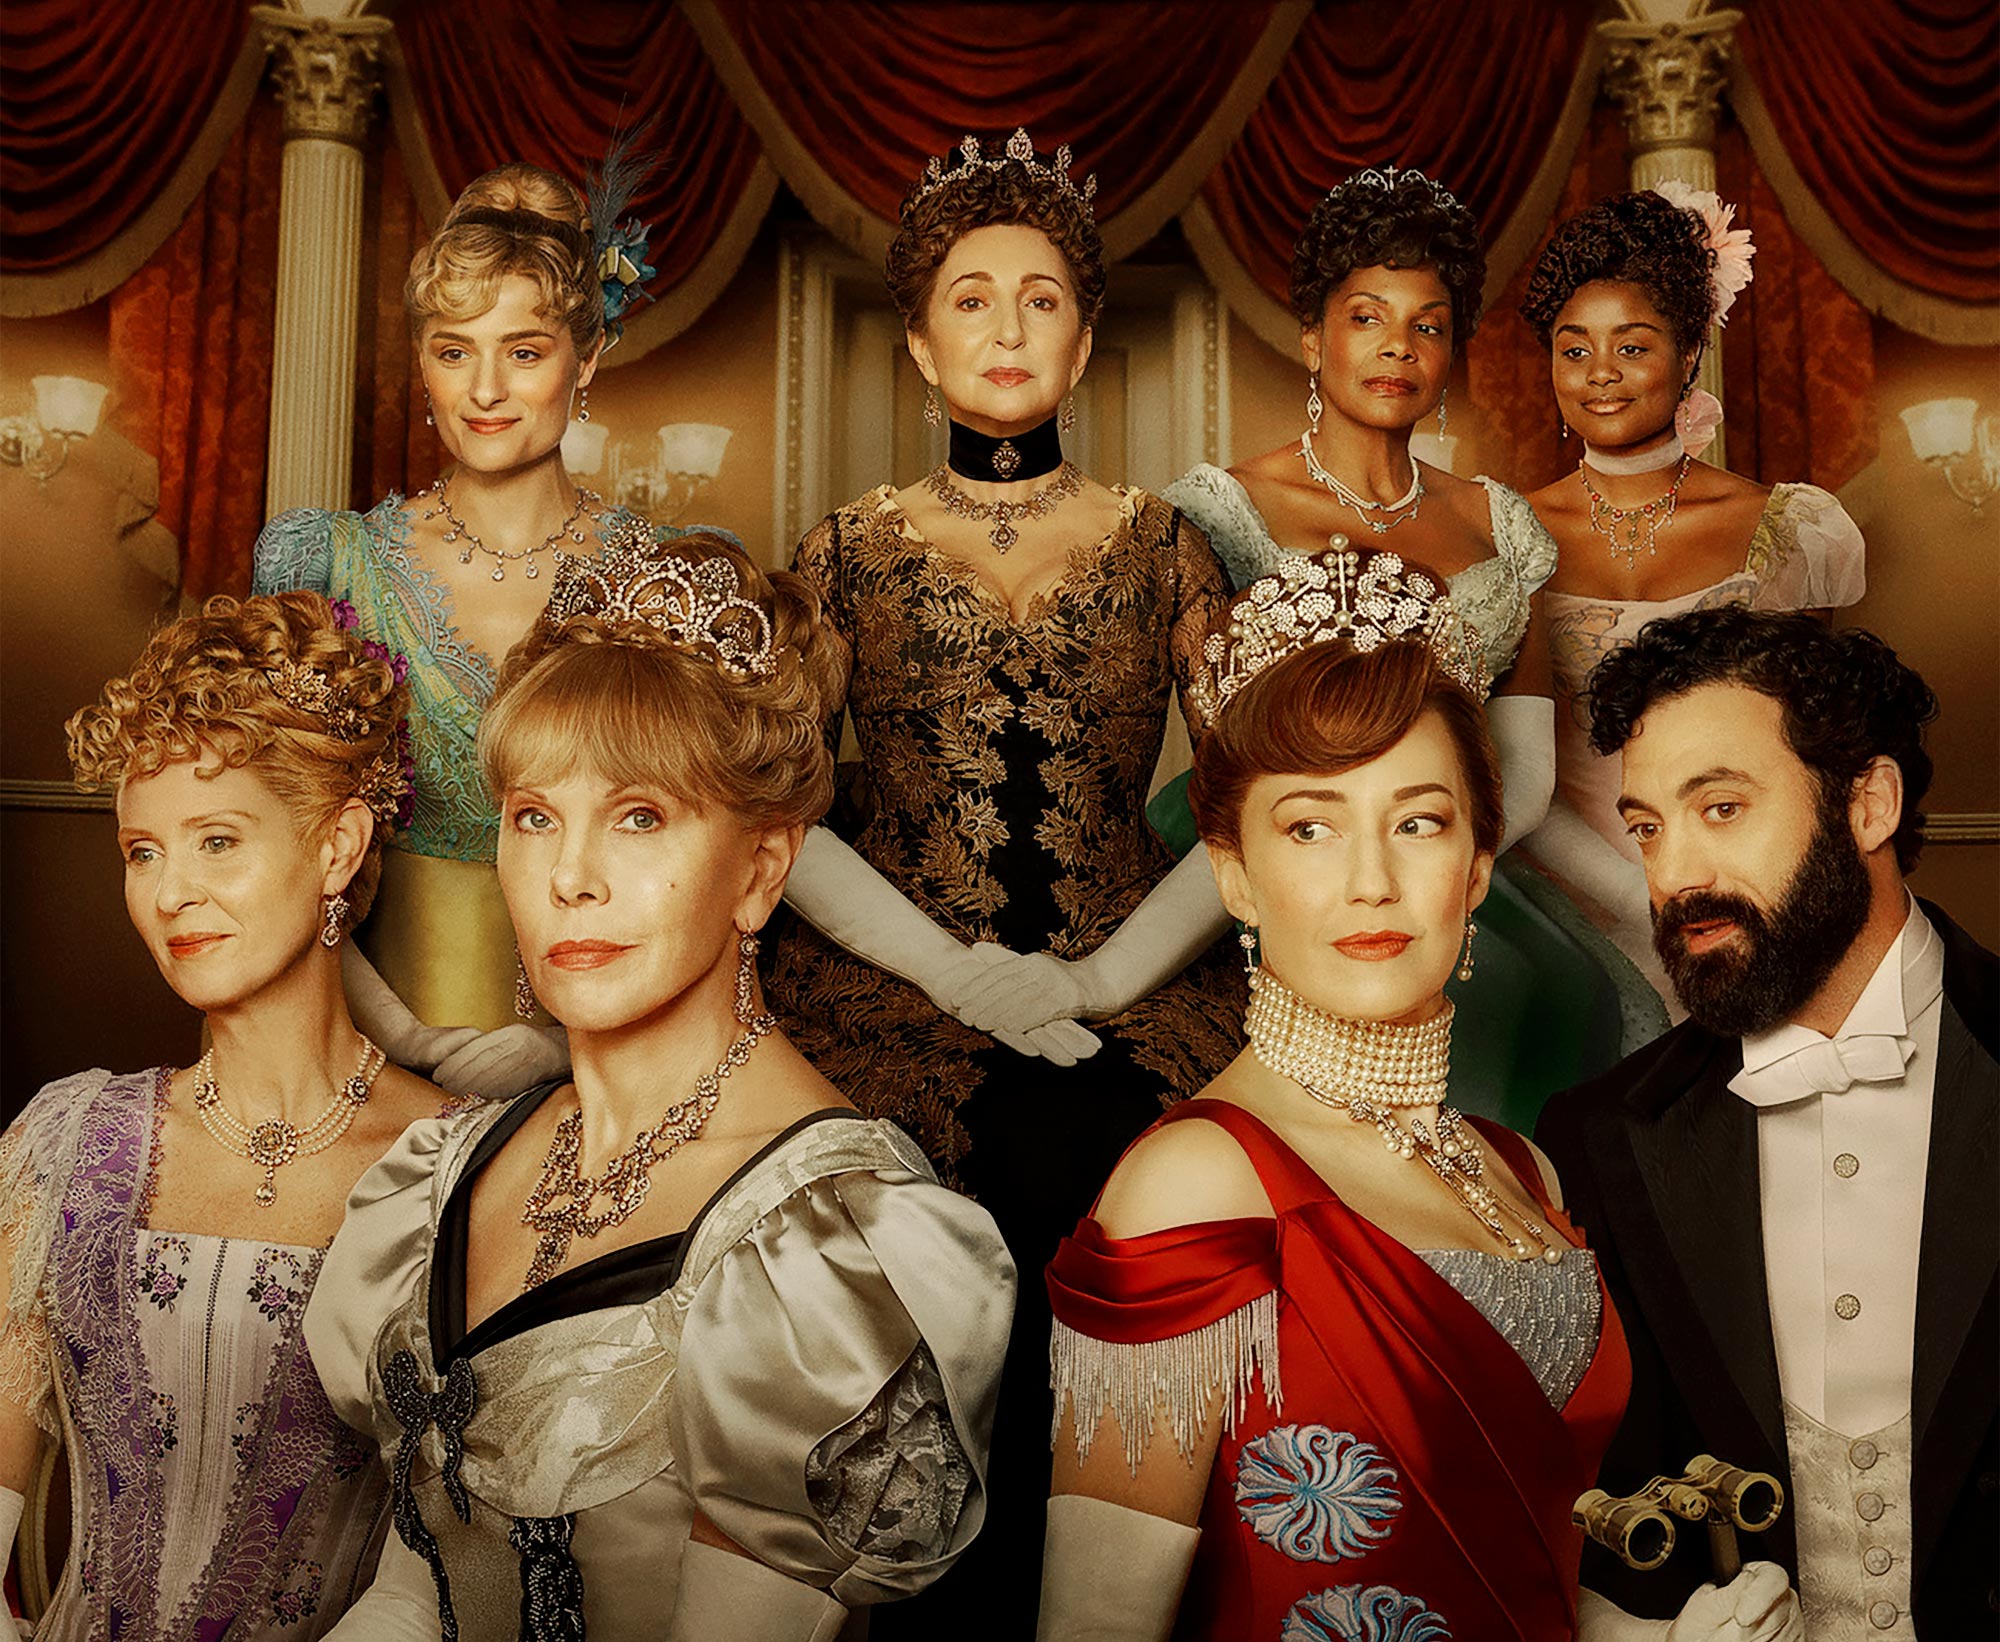 Próximo estreno: Lo que sabemos de la 2da temporada de “The Gilded Age”